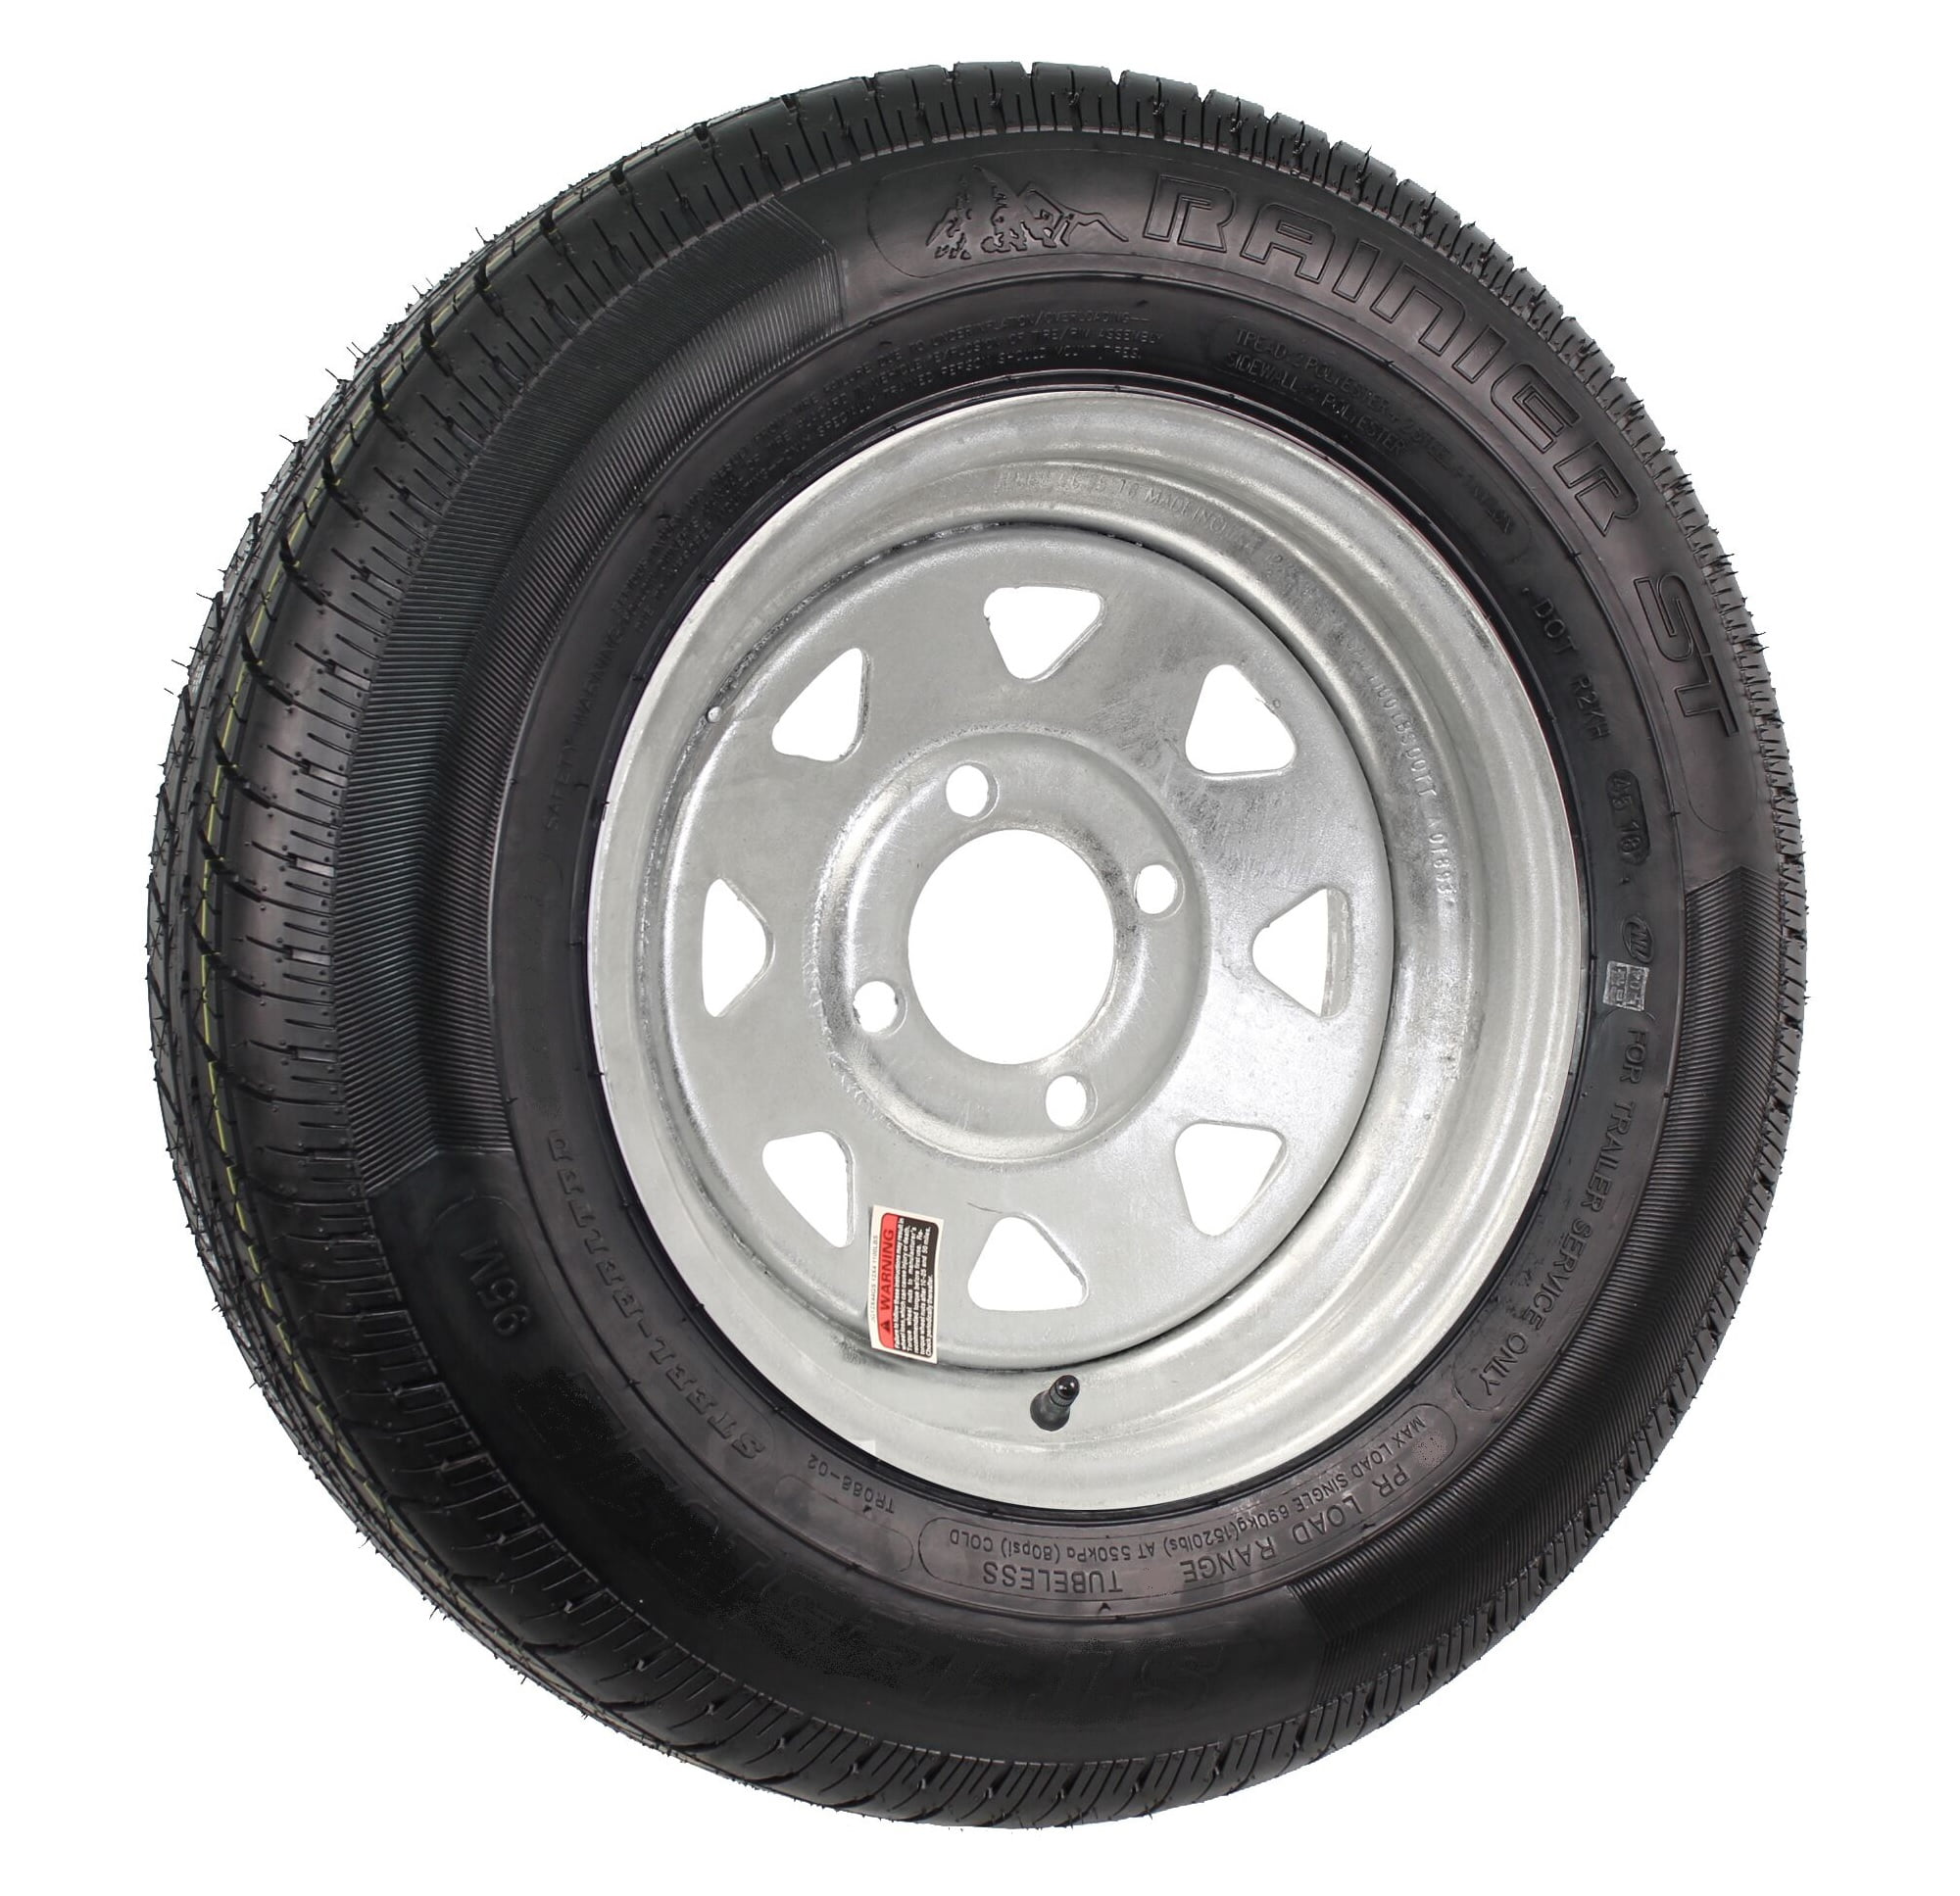 Купить шину для прицепа. 185/80 R13. Шины для прицепа. Оцинкованный колесо 13. Trailer Tire Rim.